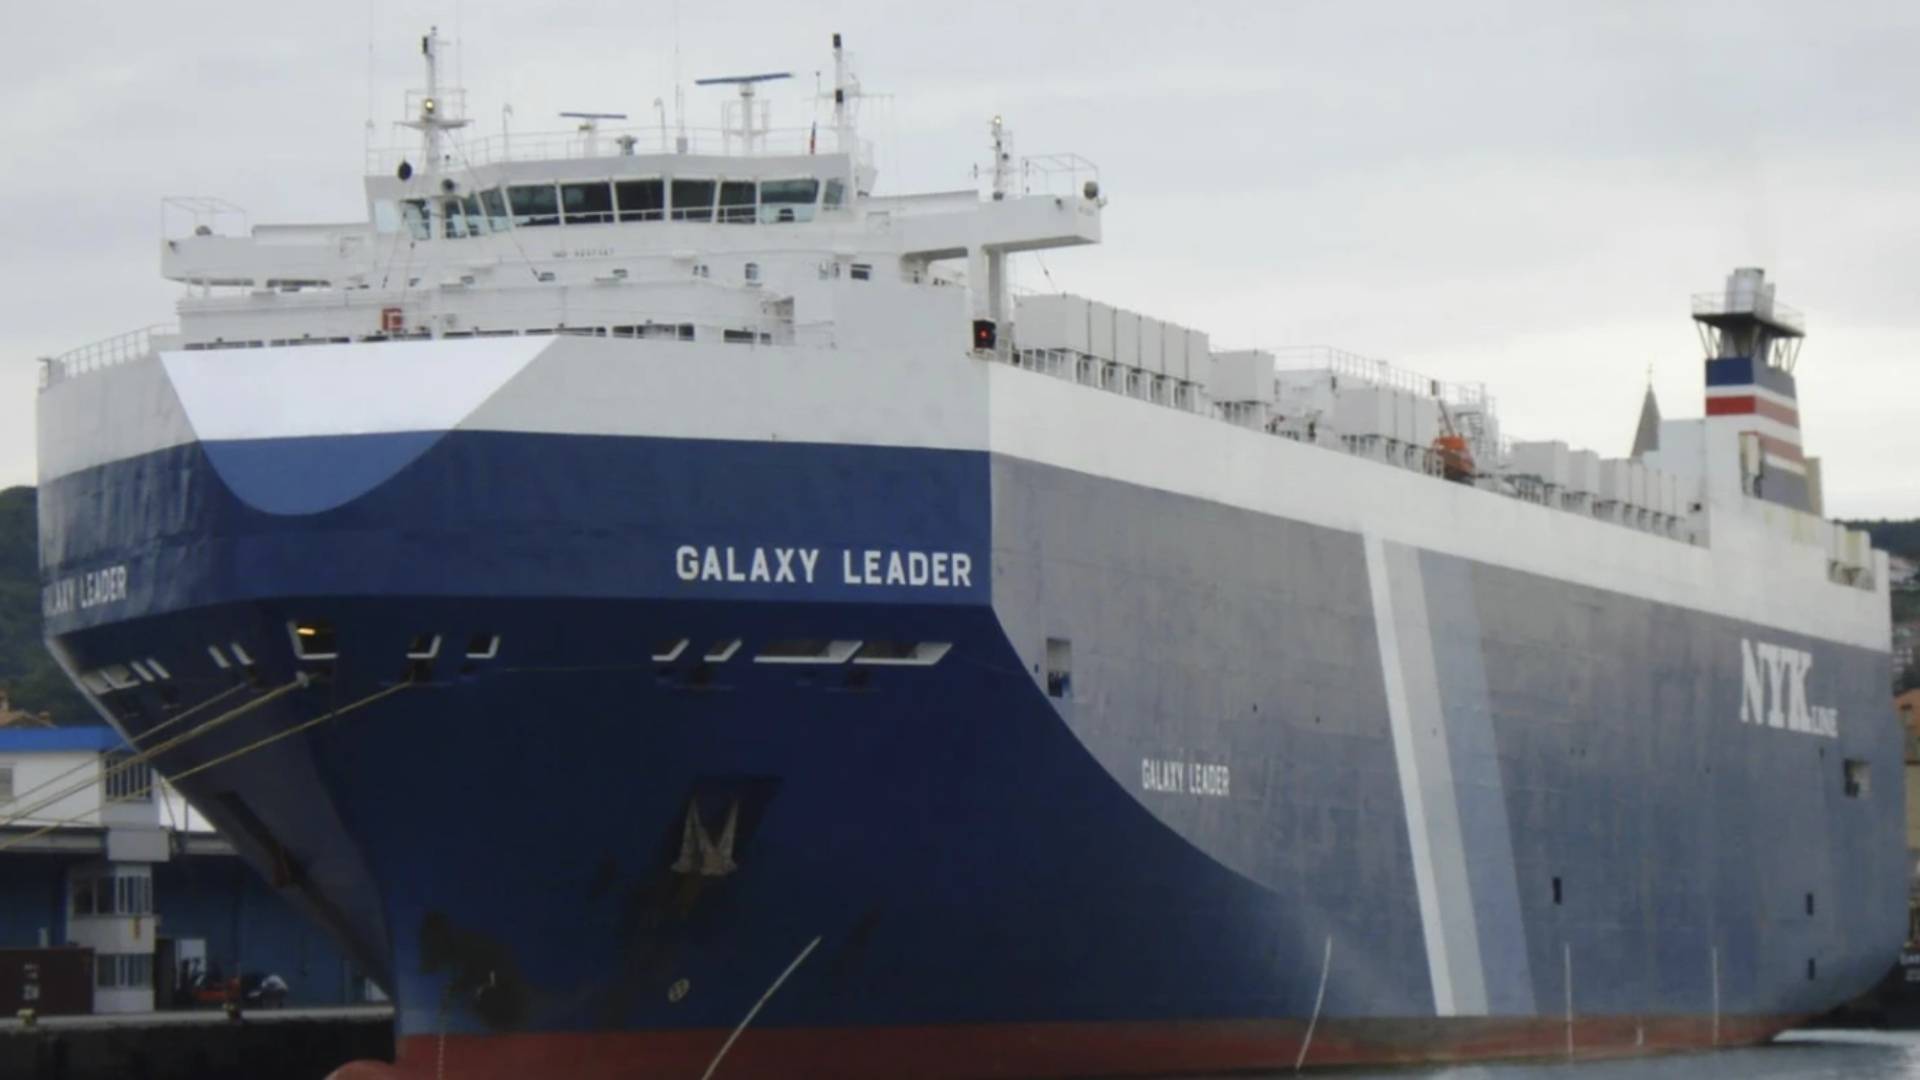 Captura del carguero 'Galaxy Leader' en una operación militar realizada en el Mar Rojo